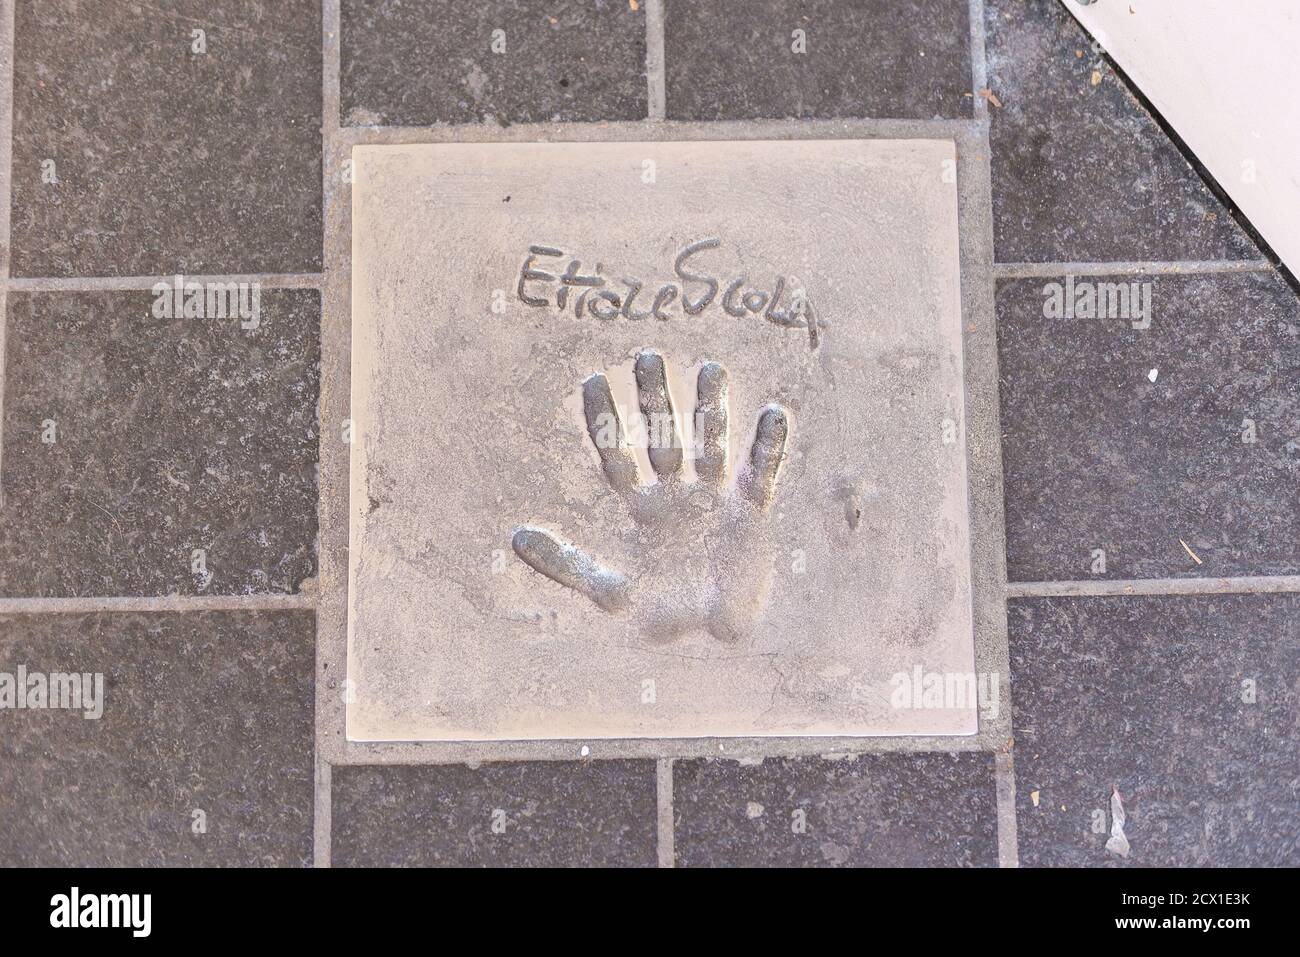 CANNES, FRANCE - AOÛT 15 : l'empreinte de la main du célèbre réalisateur Ettore Scola sur le trottoir devant le Palais des Festivals et des Co Banque D'Images